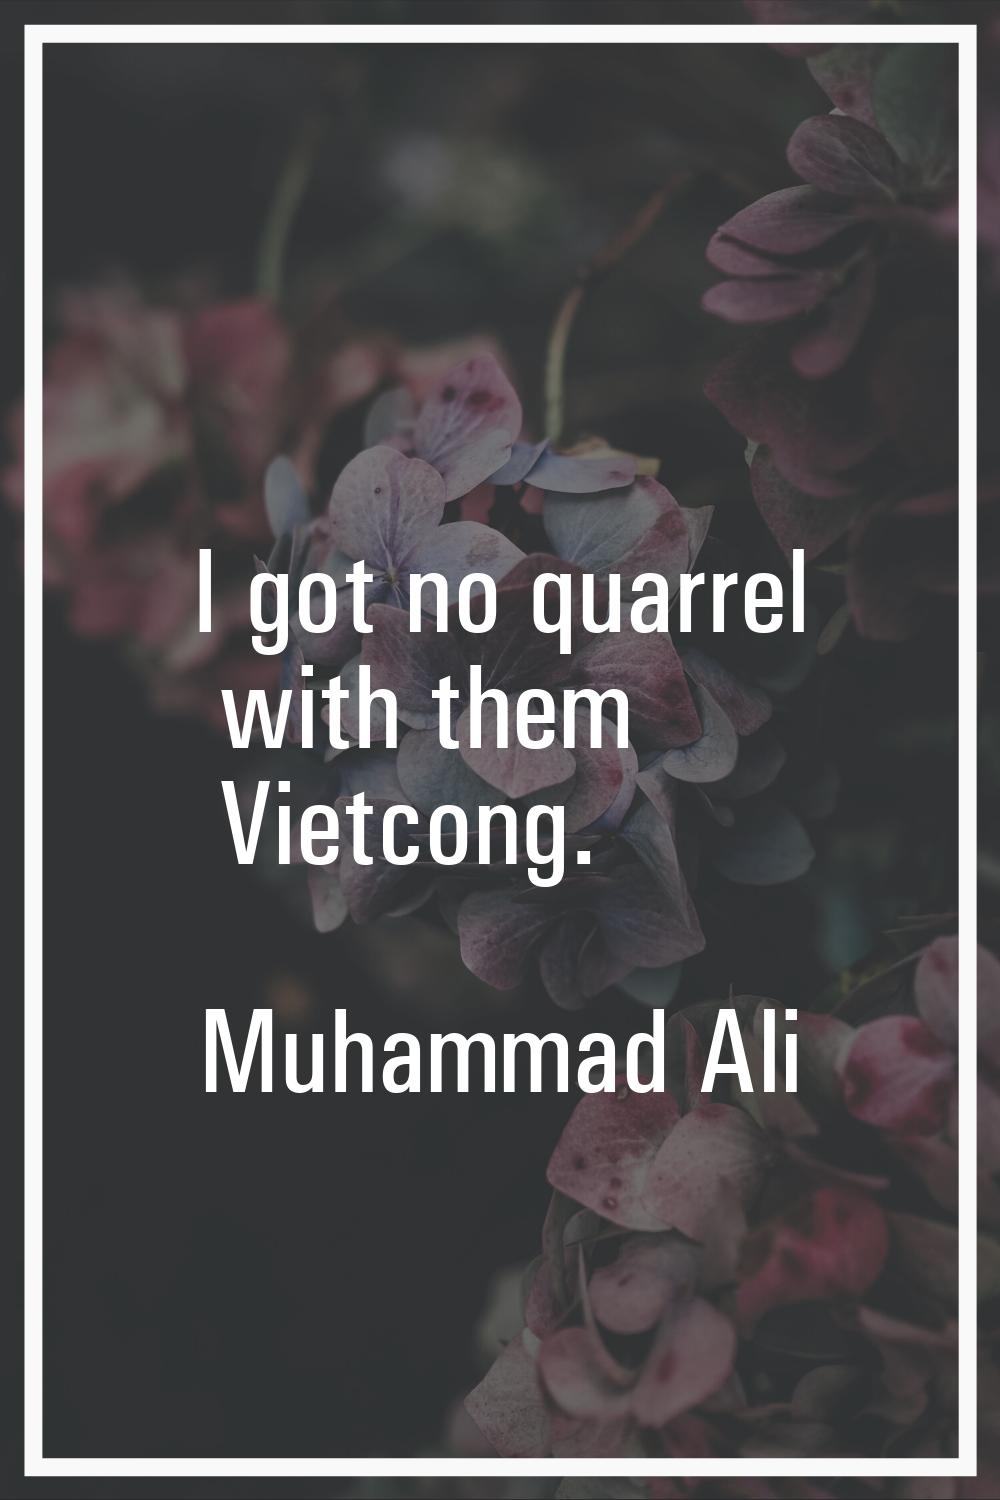 I got no quarrel with them Vietcong.